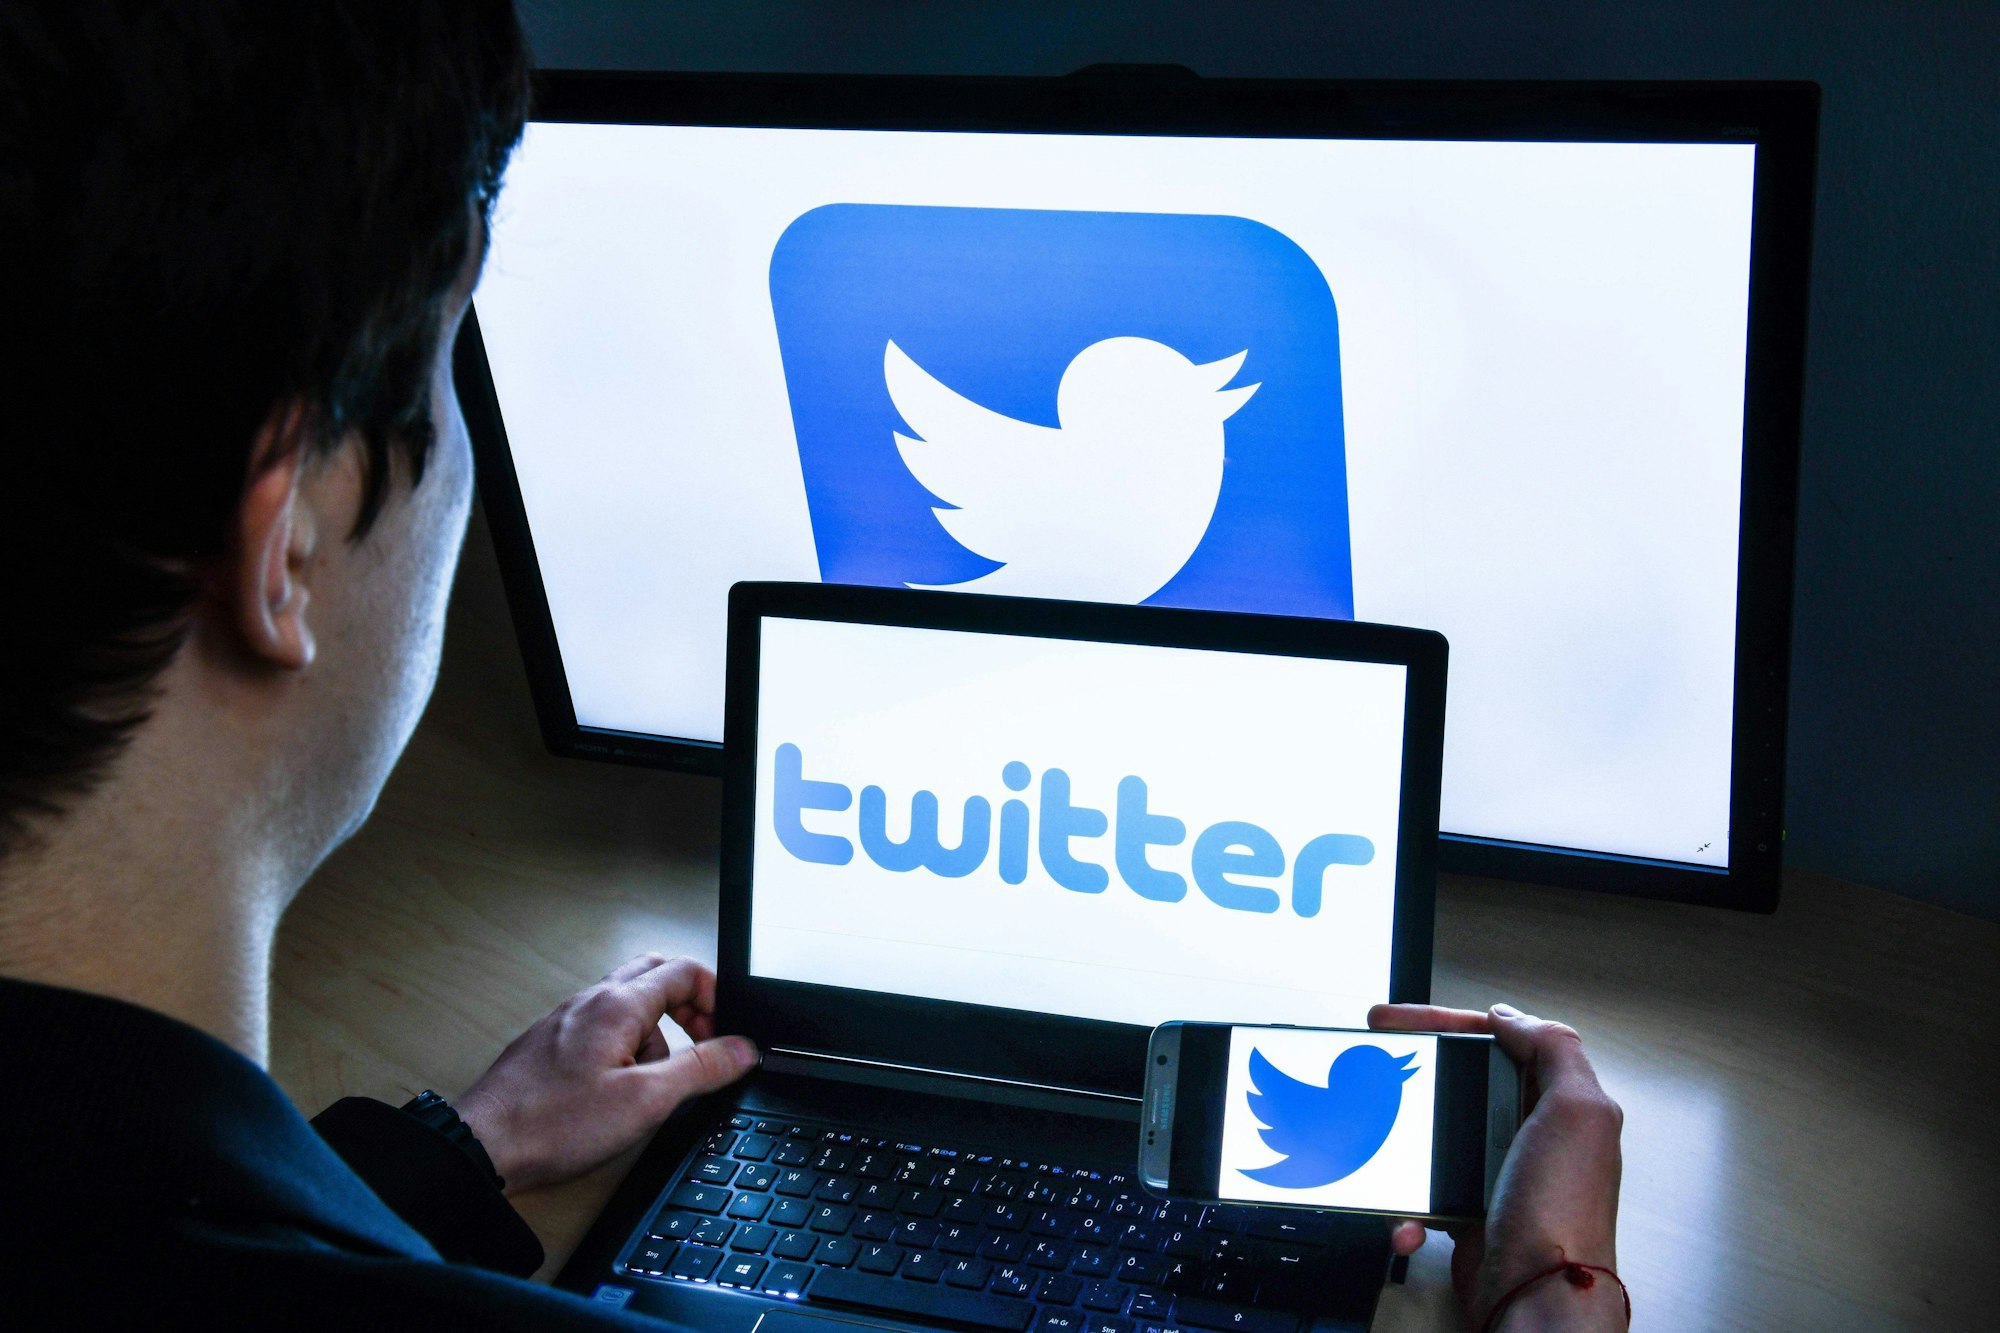 Ein Mann sitzt vor einem Laptop und hat die Twitter-App gestartet